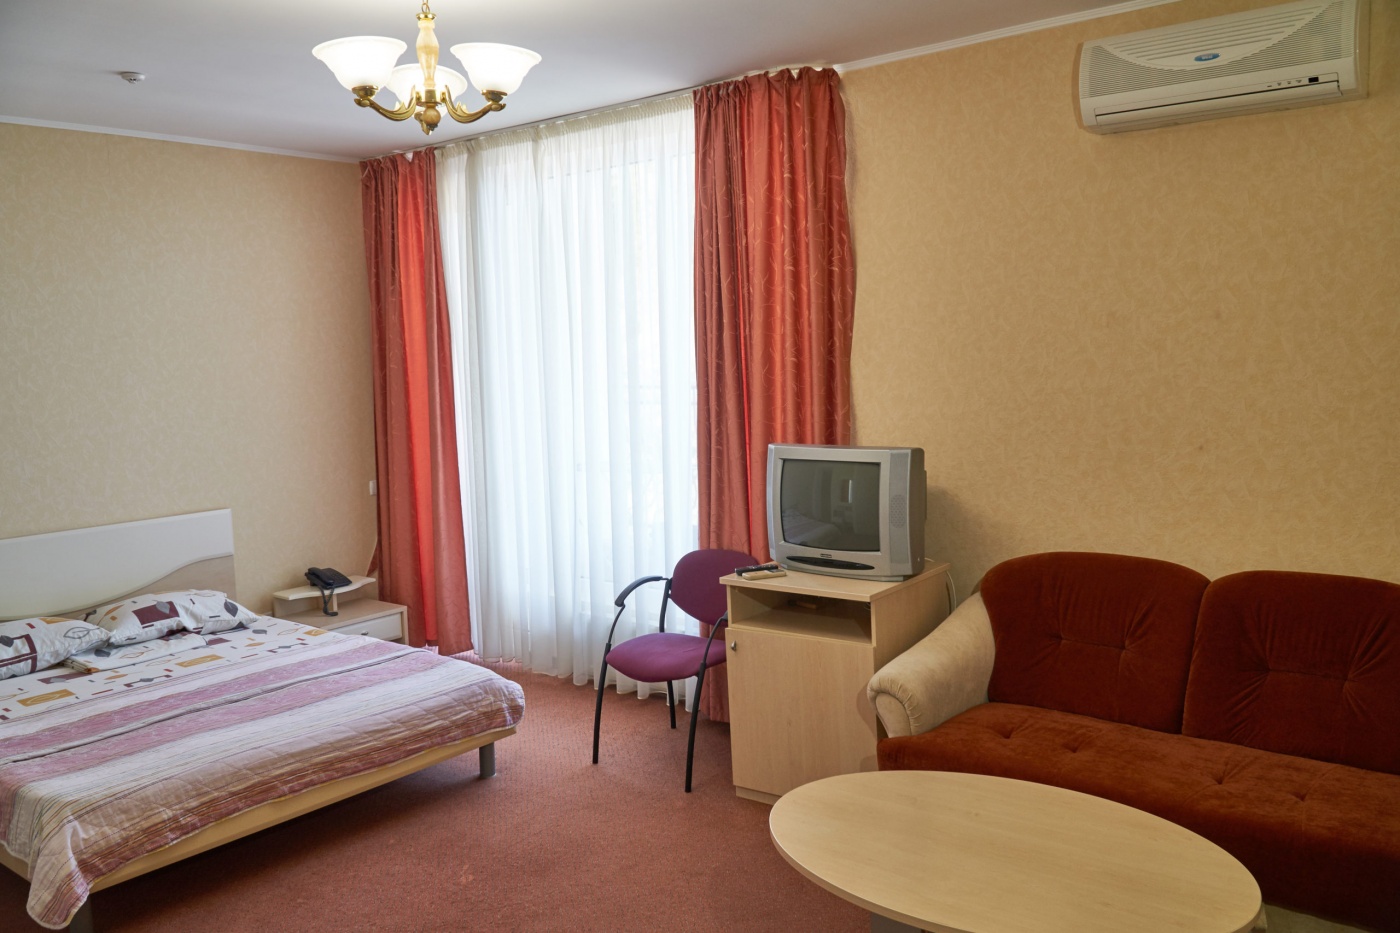  Отель «Сказка» Республика Крым Стандарт Улучшенный 2-местный, фото 3